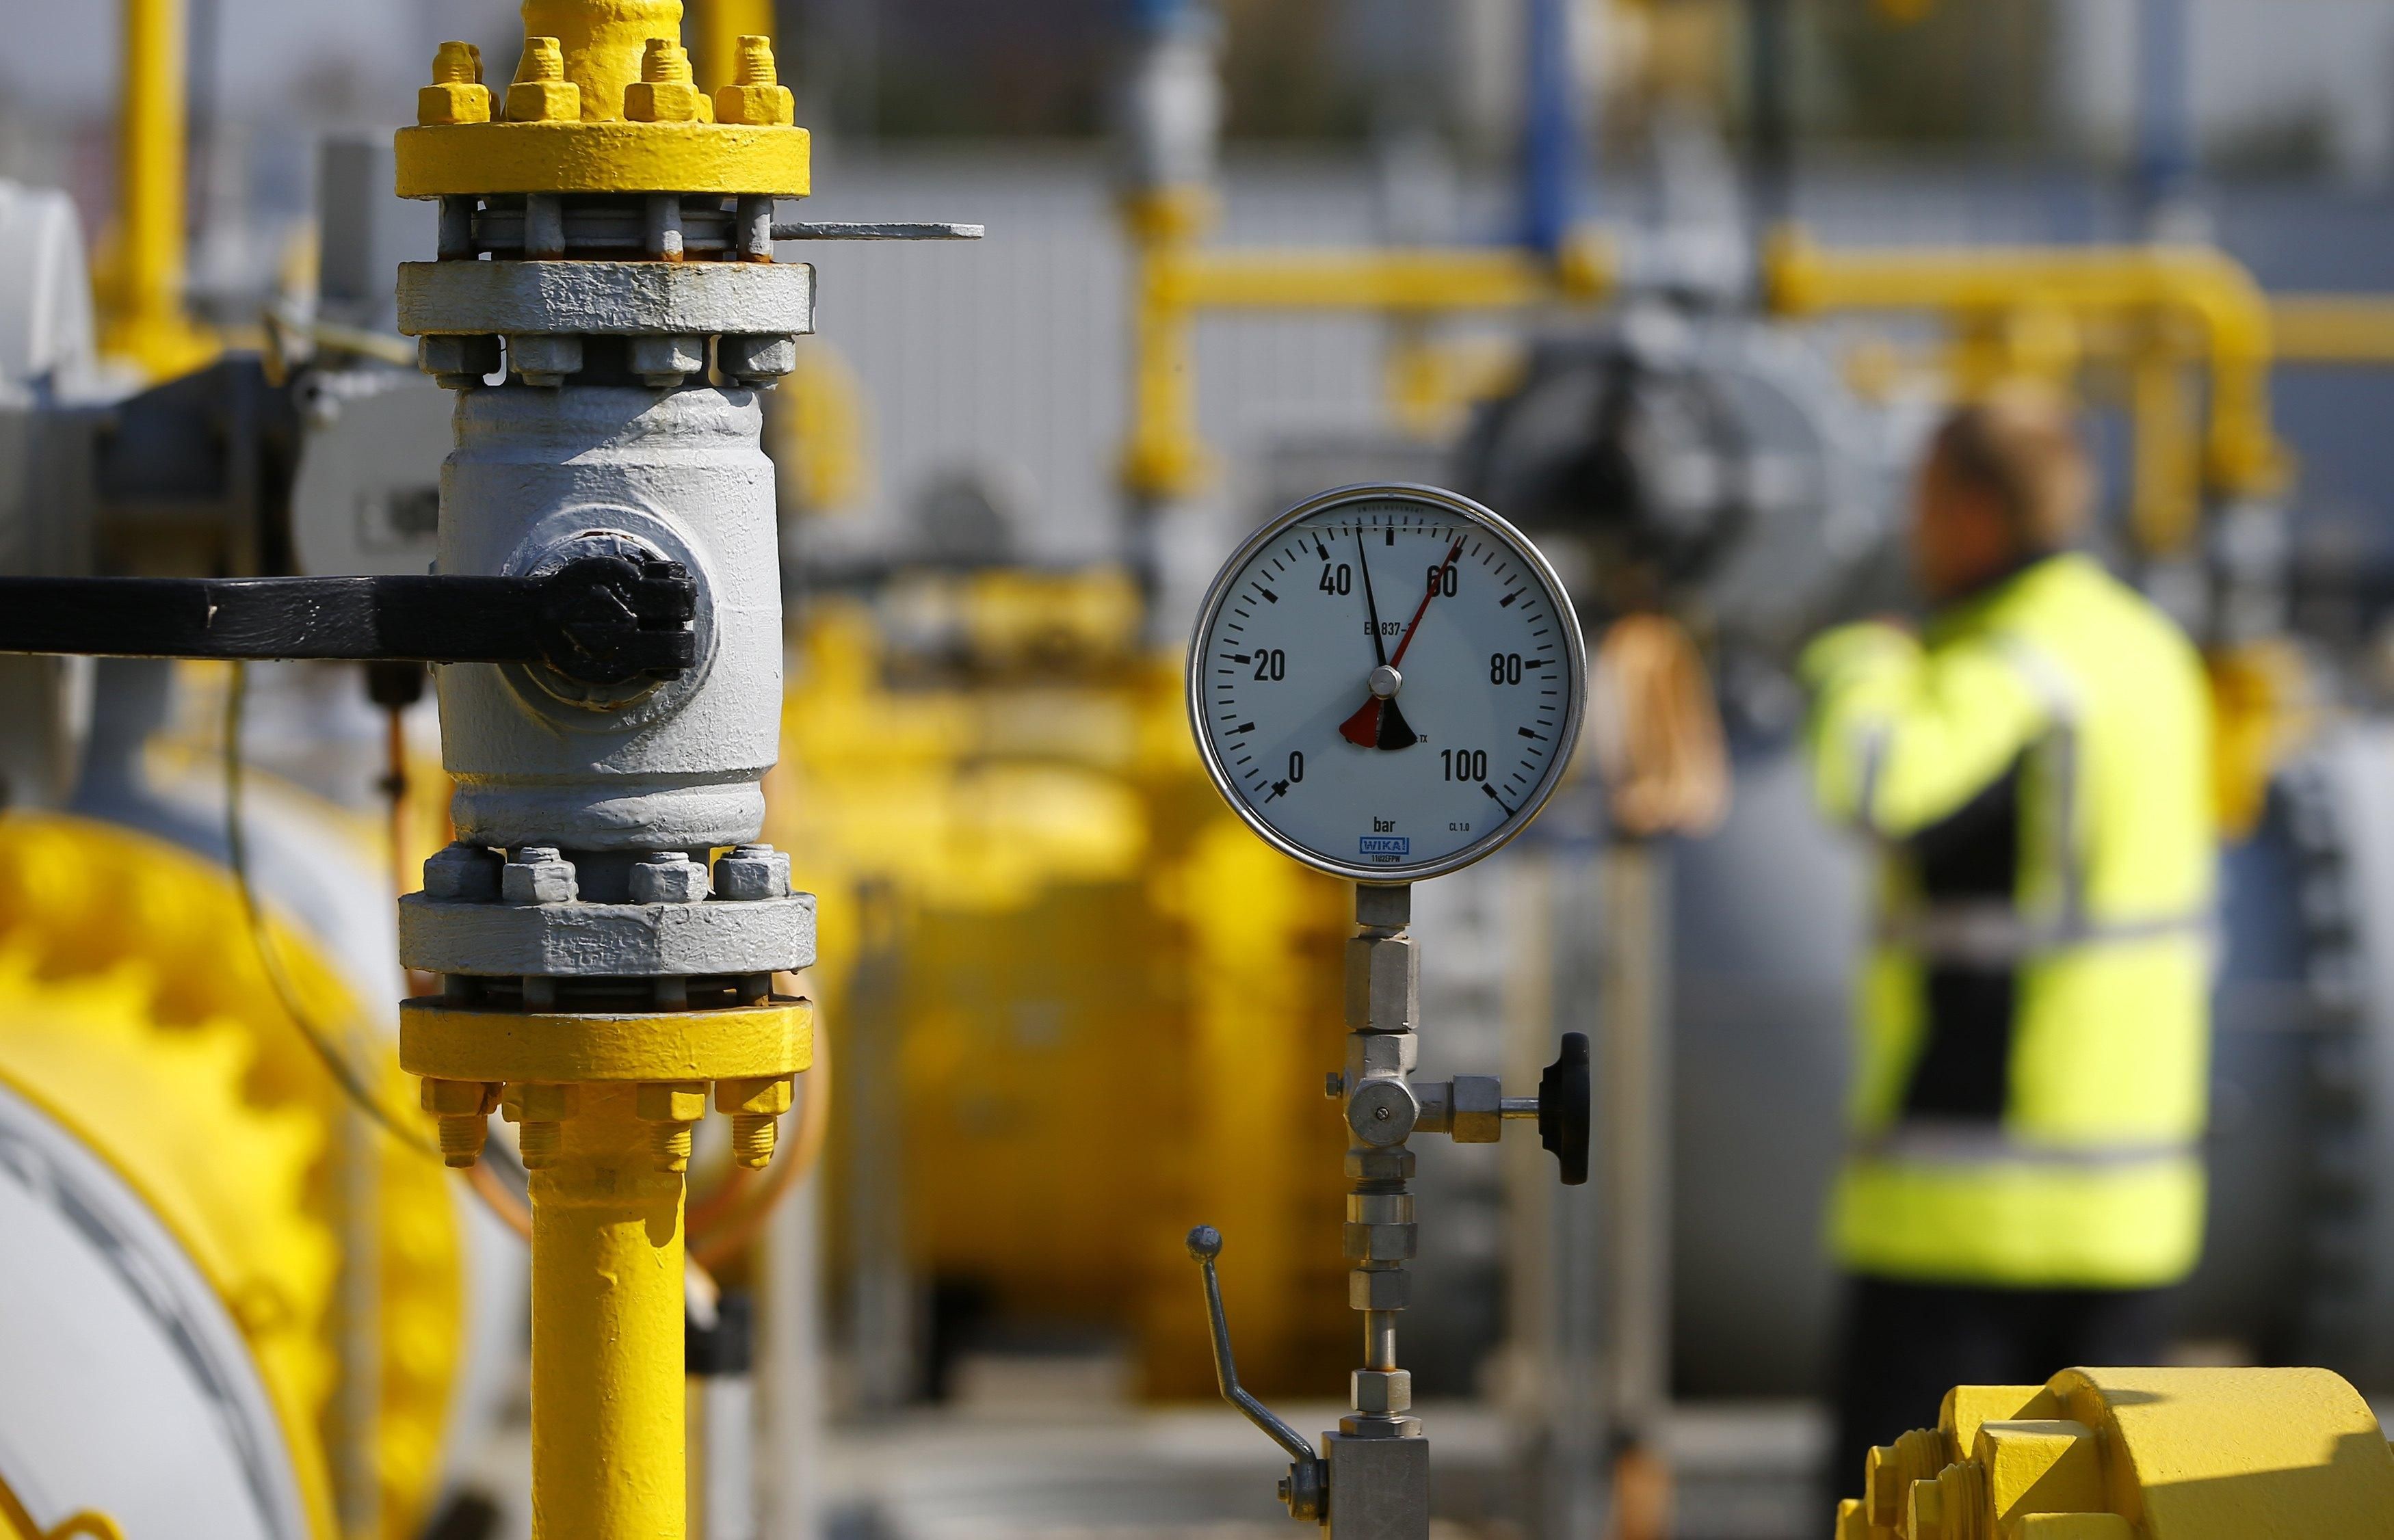 Поставщики газа в Румынии превысили фиксированные тарифы и получили штрафы